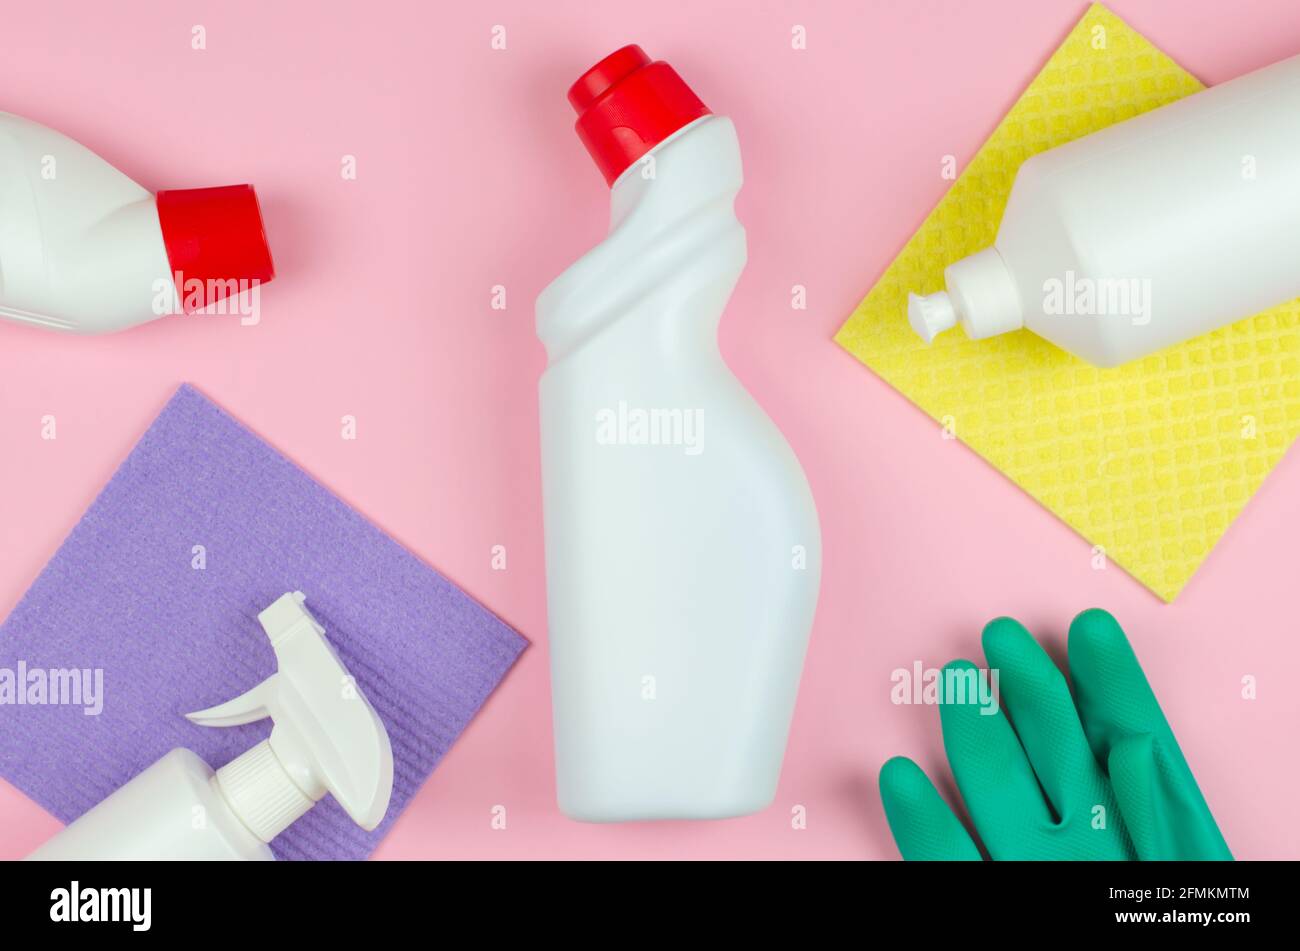 Concetto aziendale di utensili per la pulizia. Bottiglie bianche con detergenti e prodotti per la pulizia e una spugna su fondo rosa. Prodotti per la pulizia Foto Stock